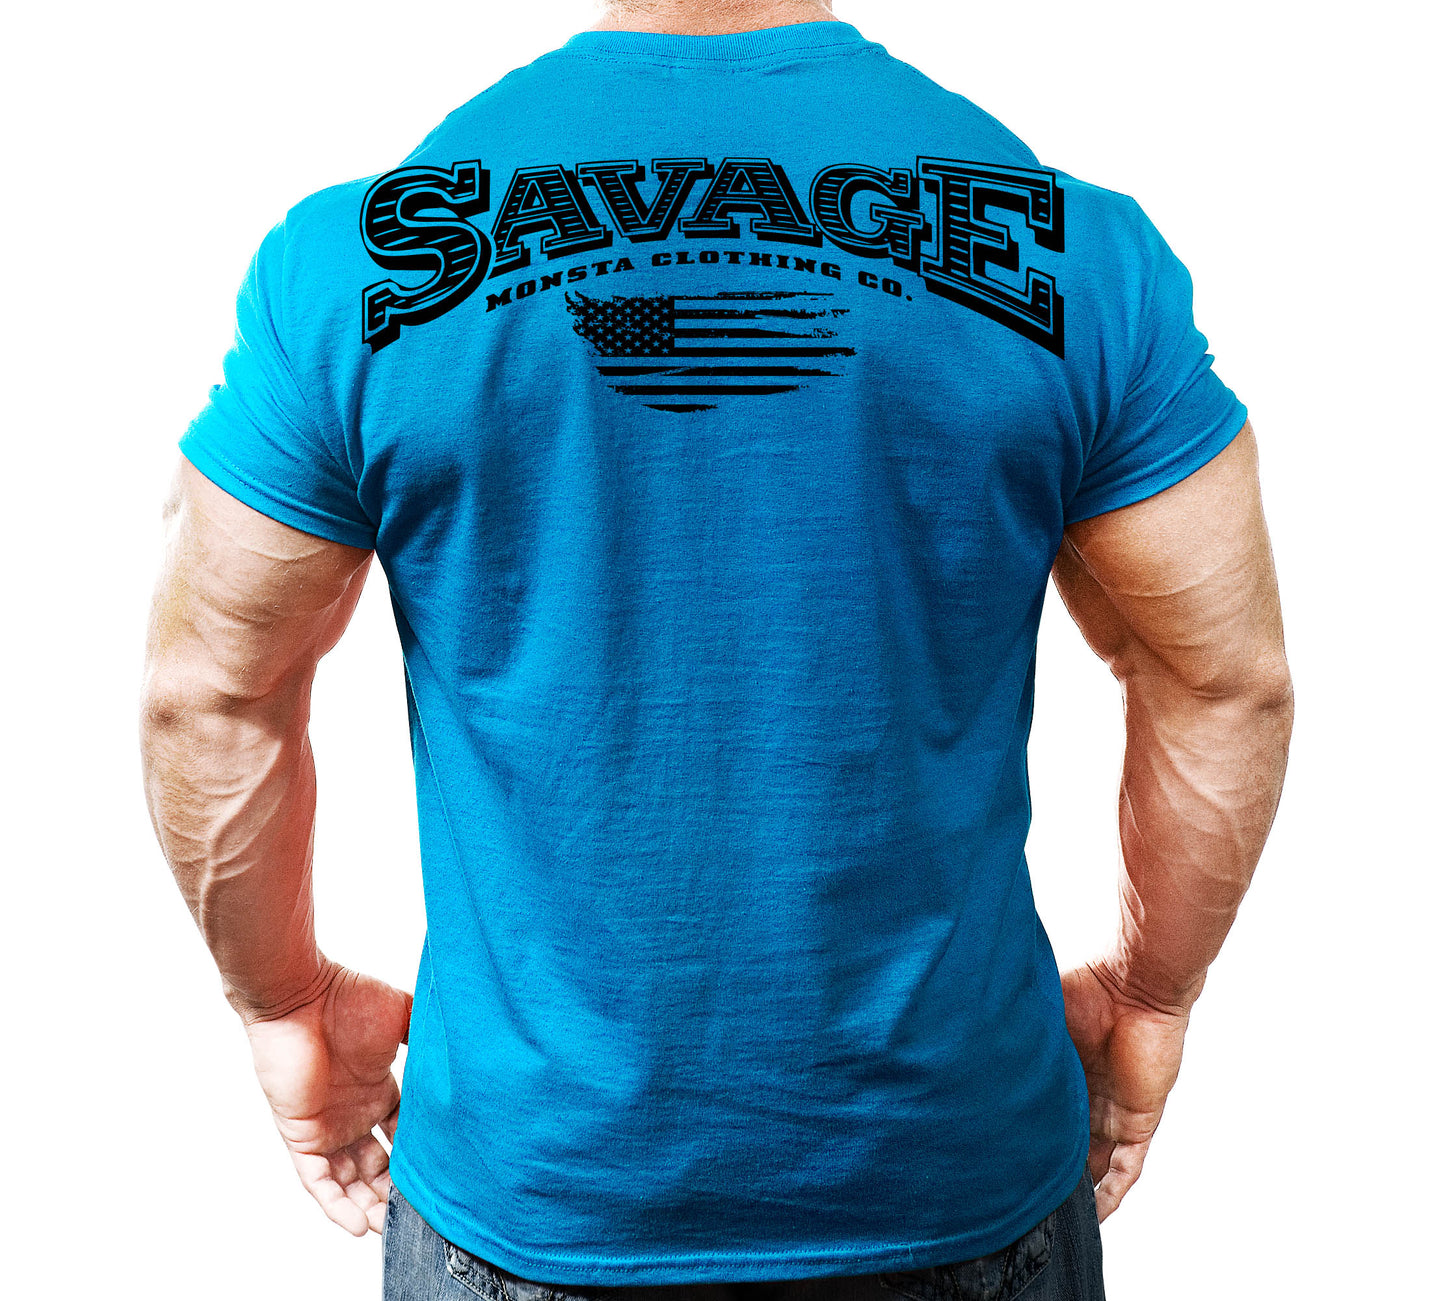 Savage-342: Black